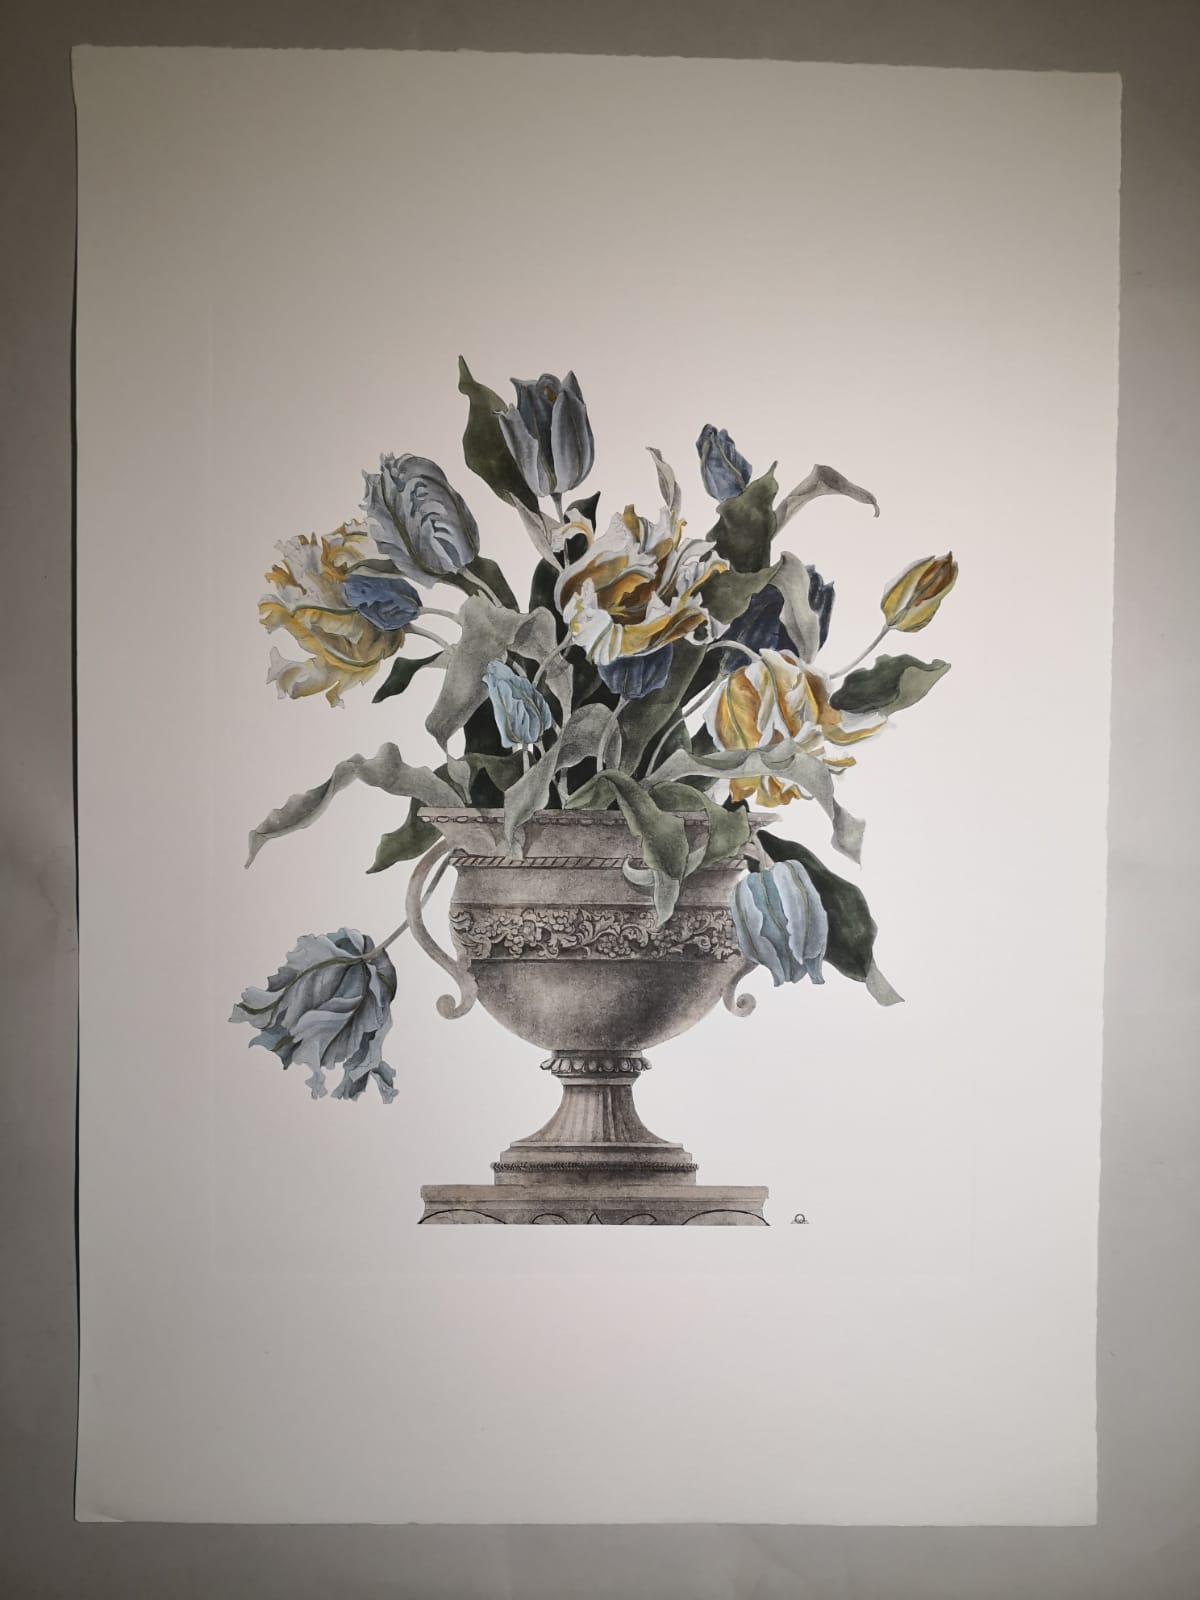 Imprimé élégant et raffiné représentant un vase de fleurs et, précisément, un vase de tulipes jaunes et bleu clair. 
Quatre imprimés de vases différents sont disponibles pour créer une composition colorée.
Toutes les impressions sont entièrement